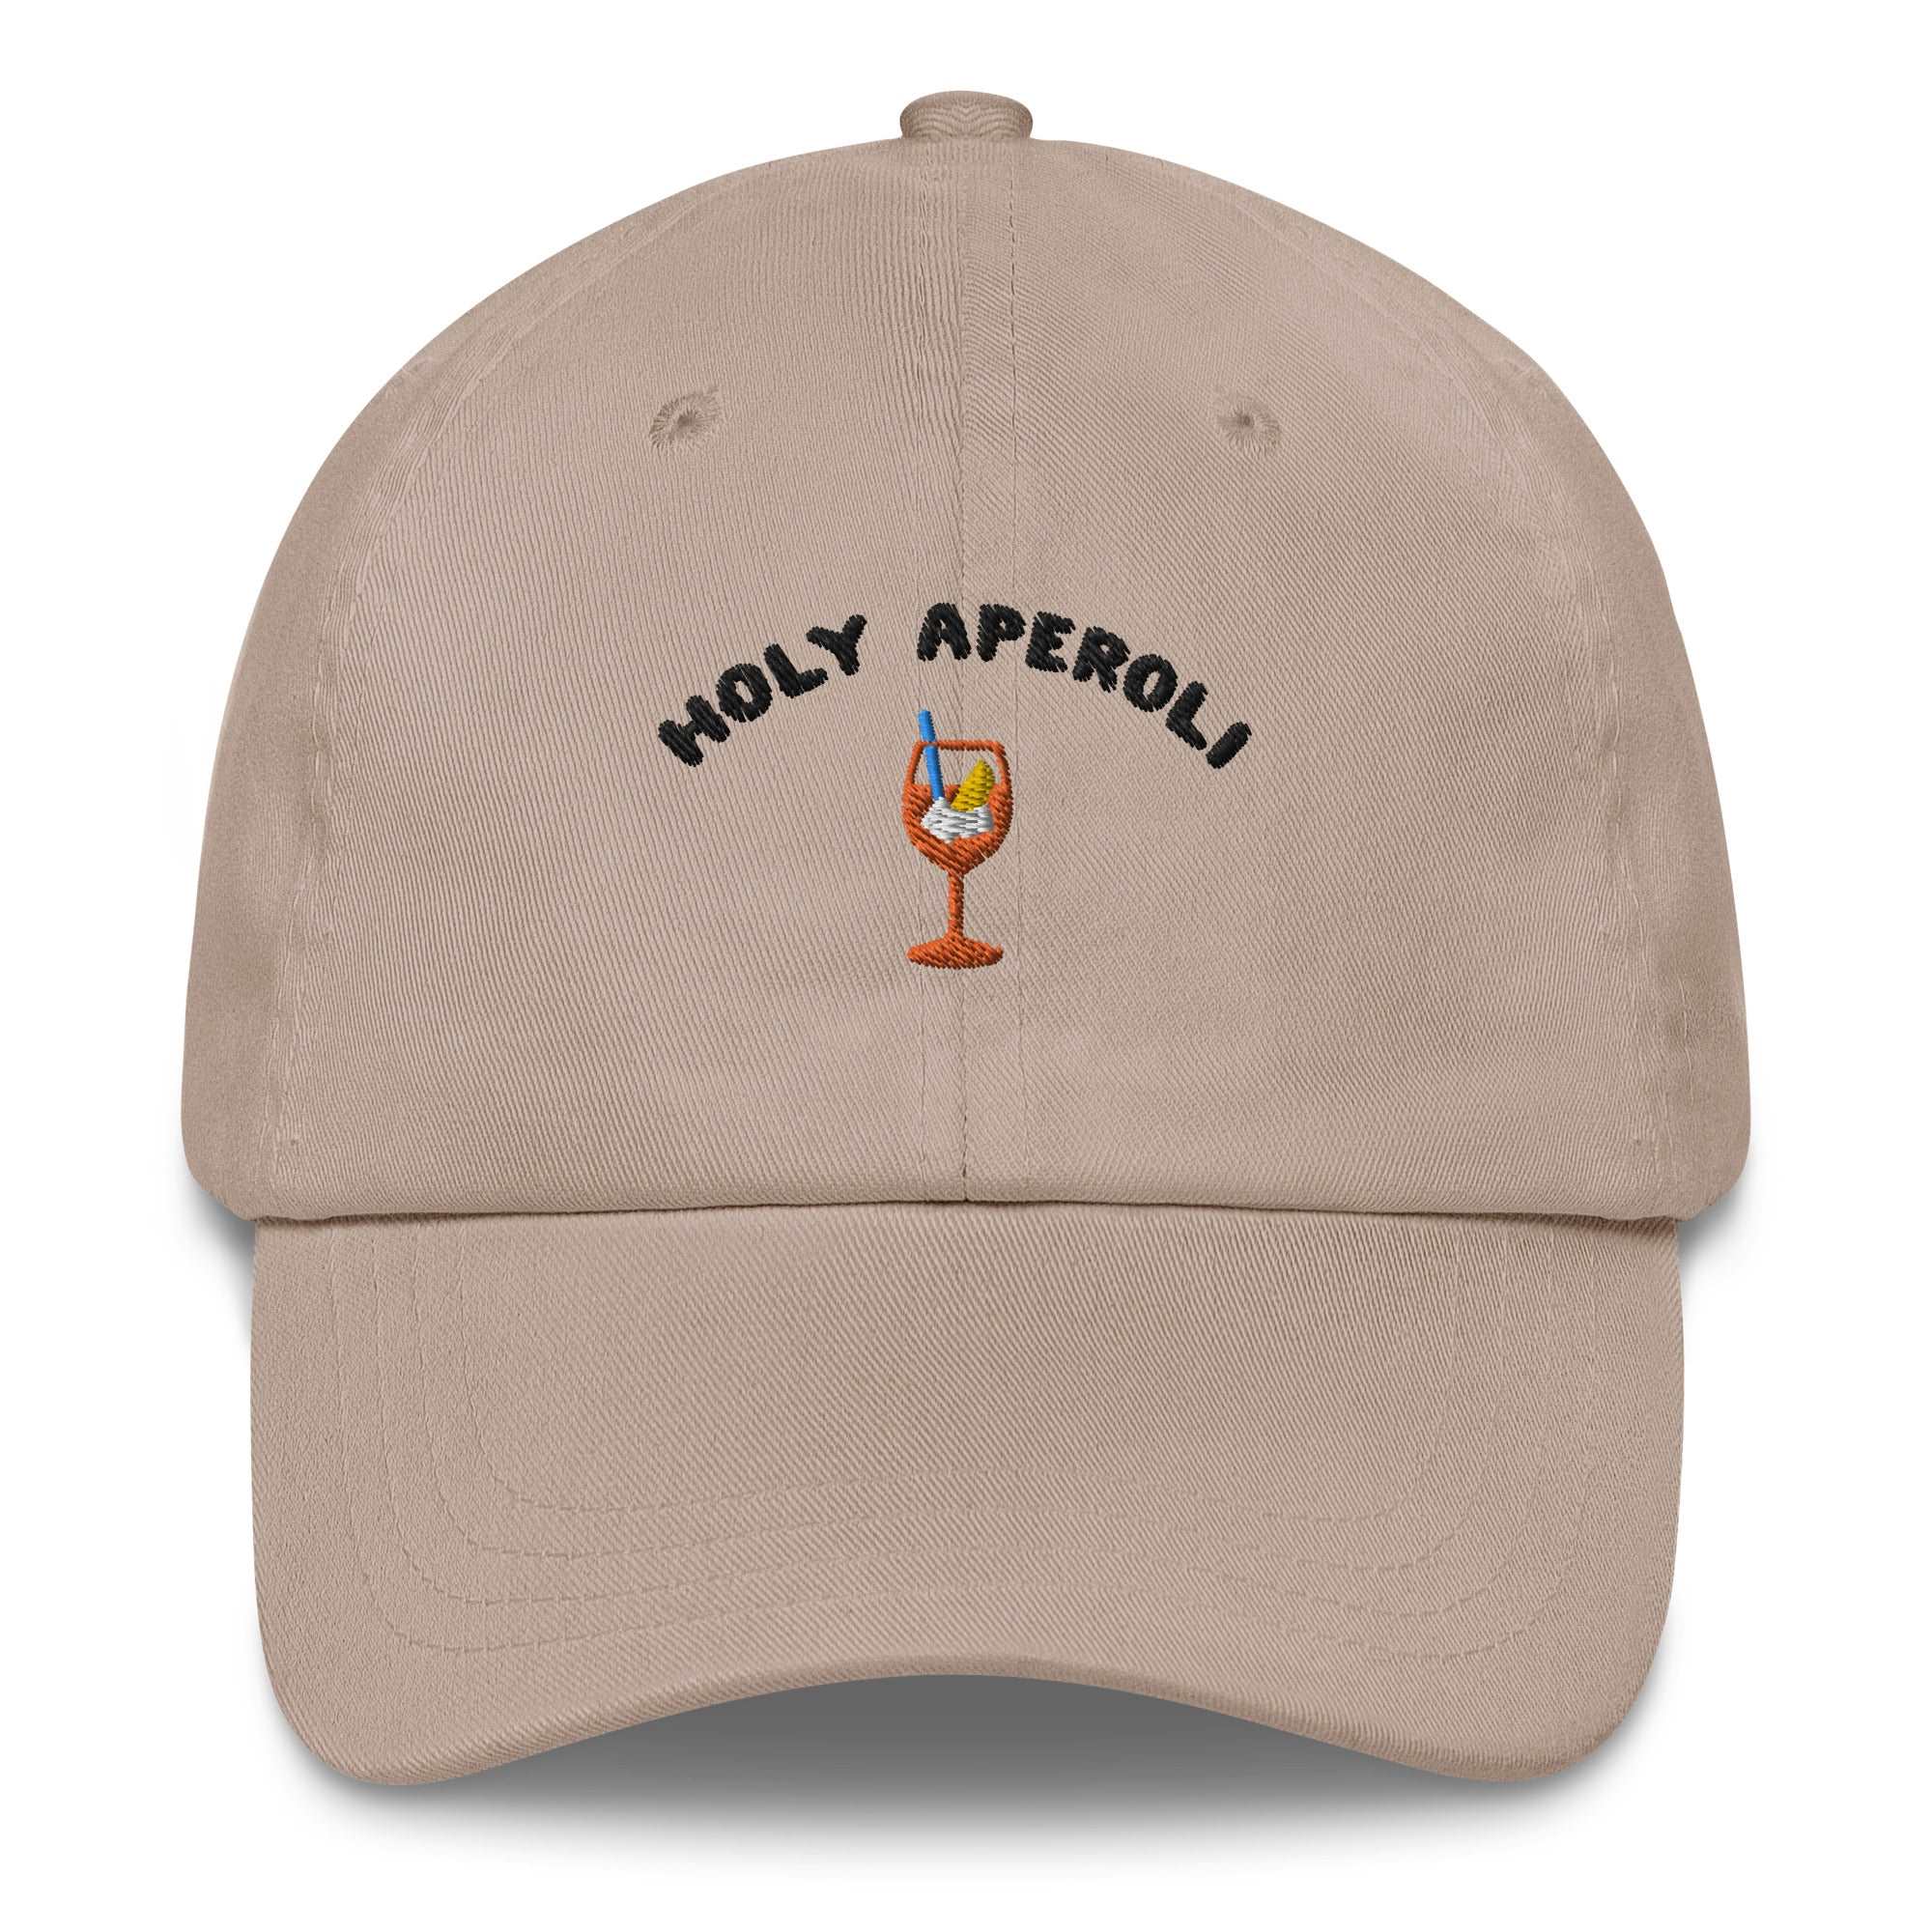 Holy Aperoli - Cap